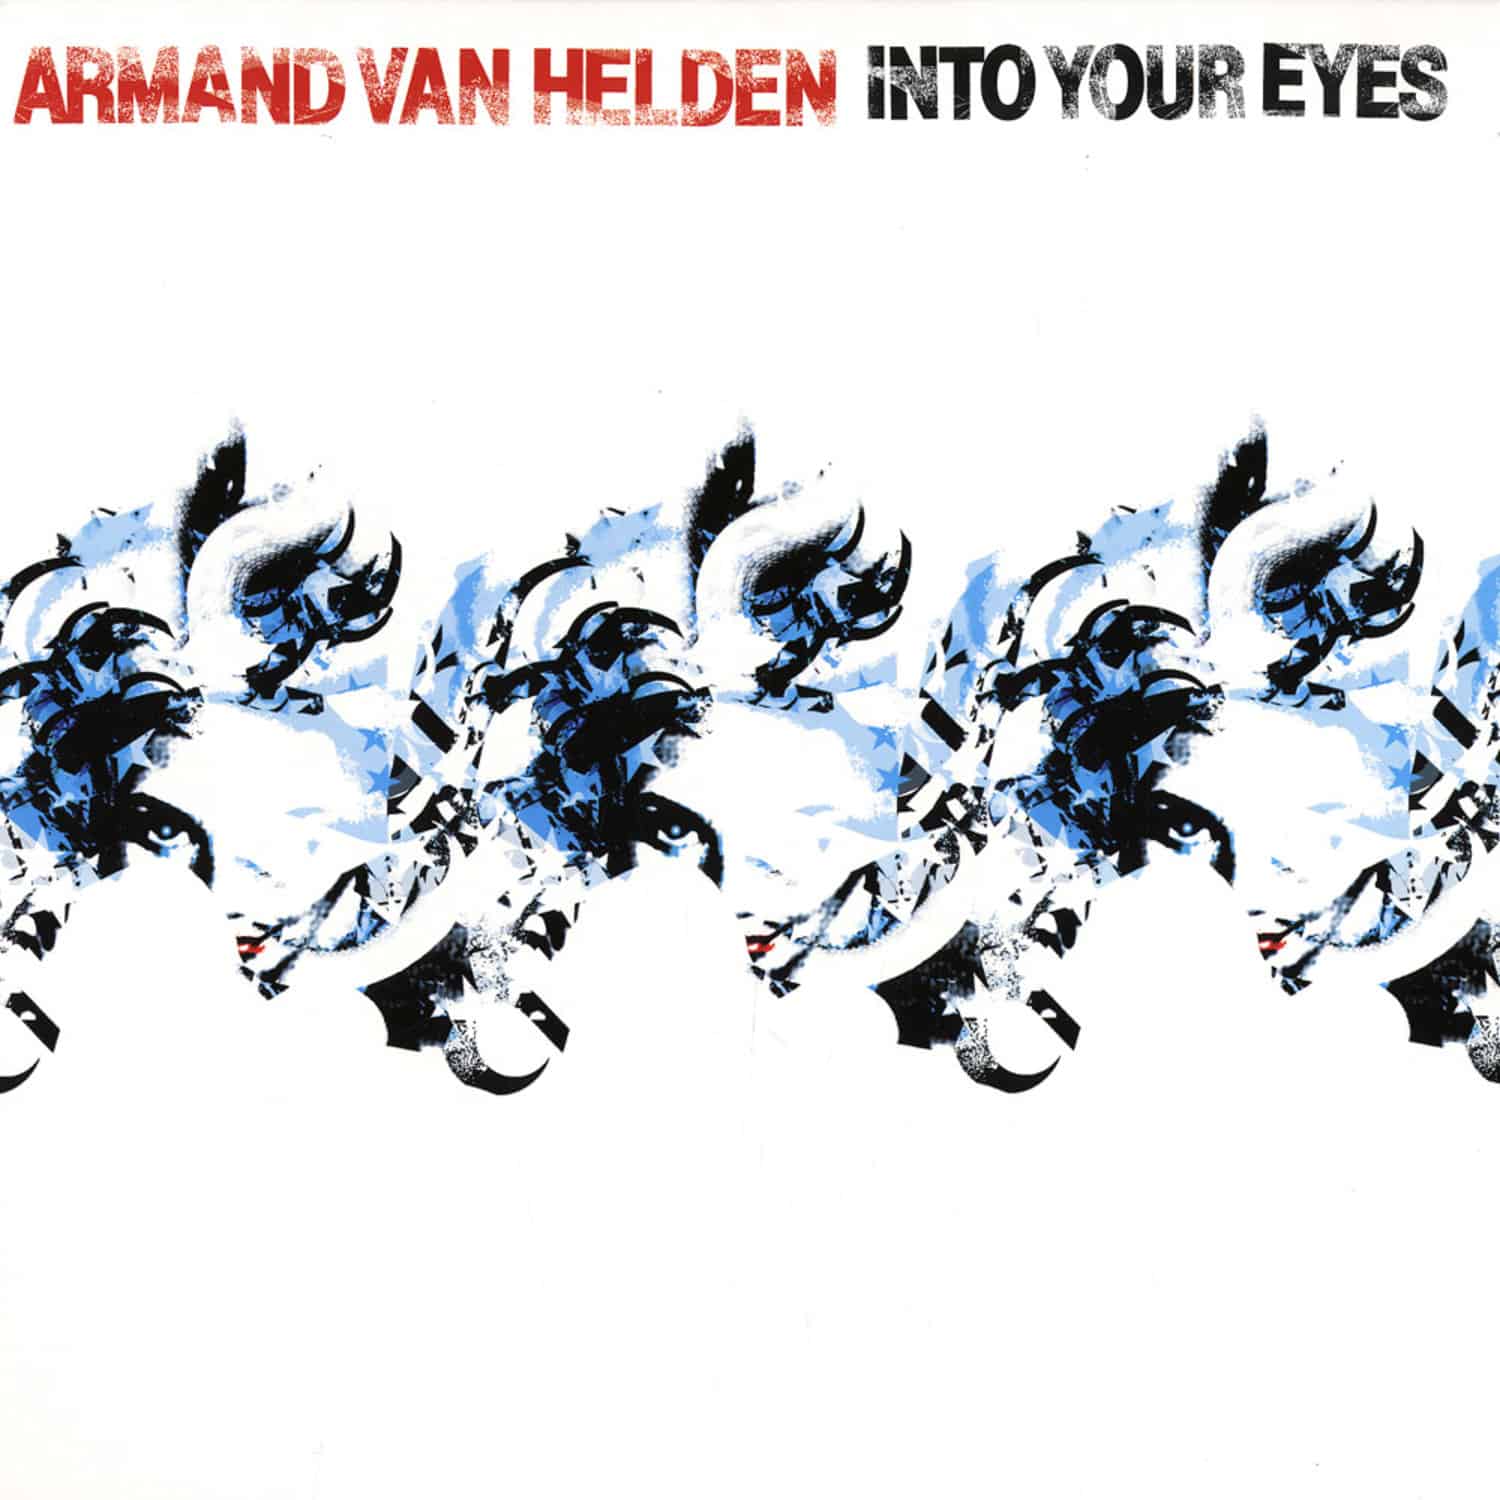 Armand van Helden - INTO YOUR EYES